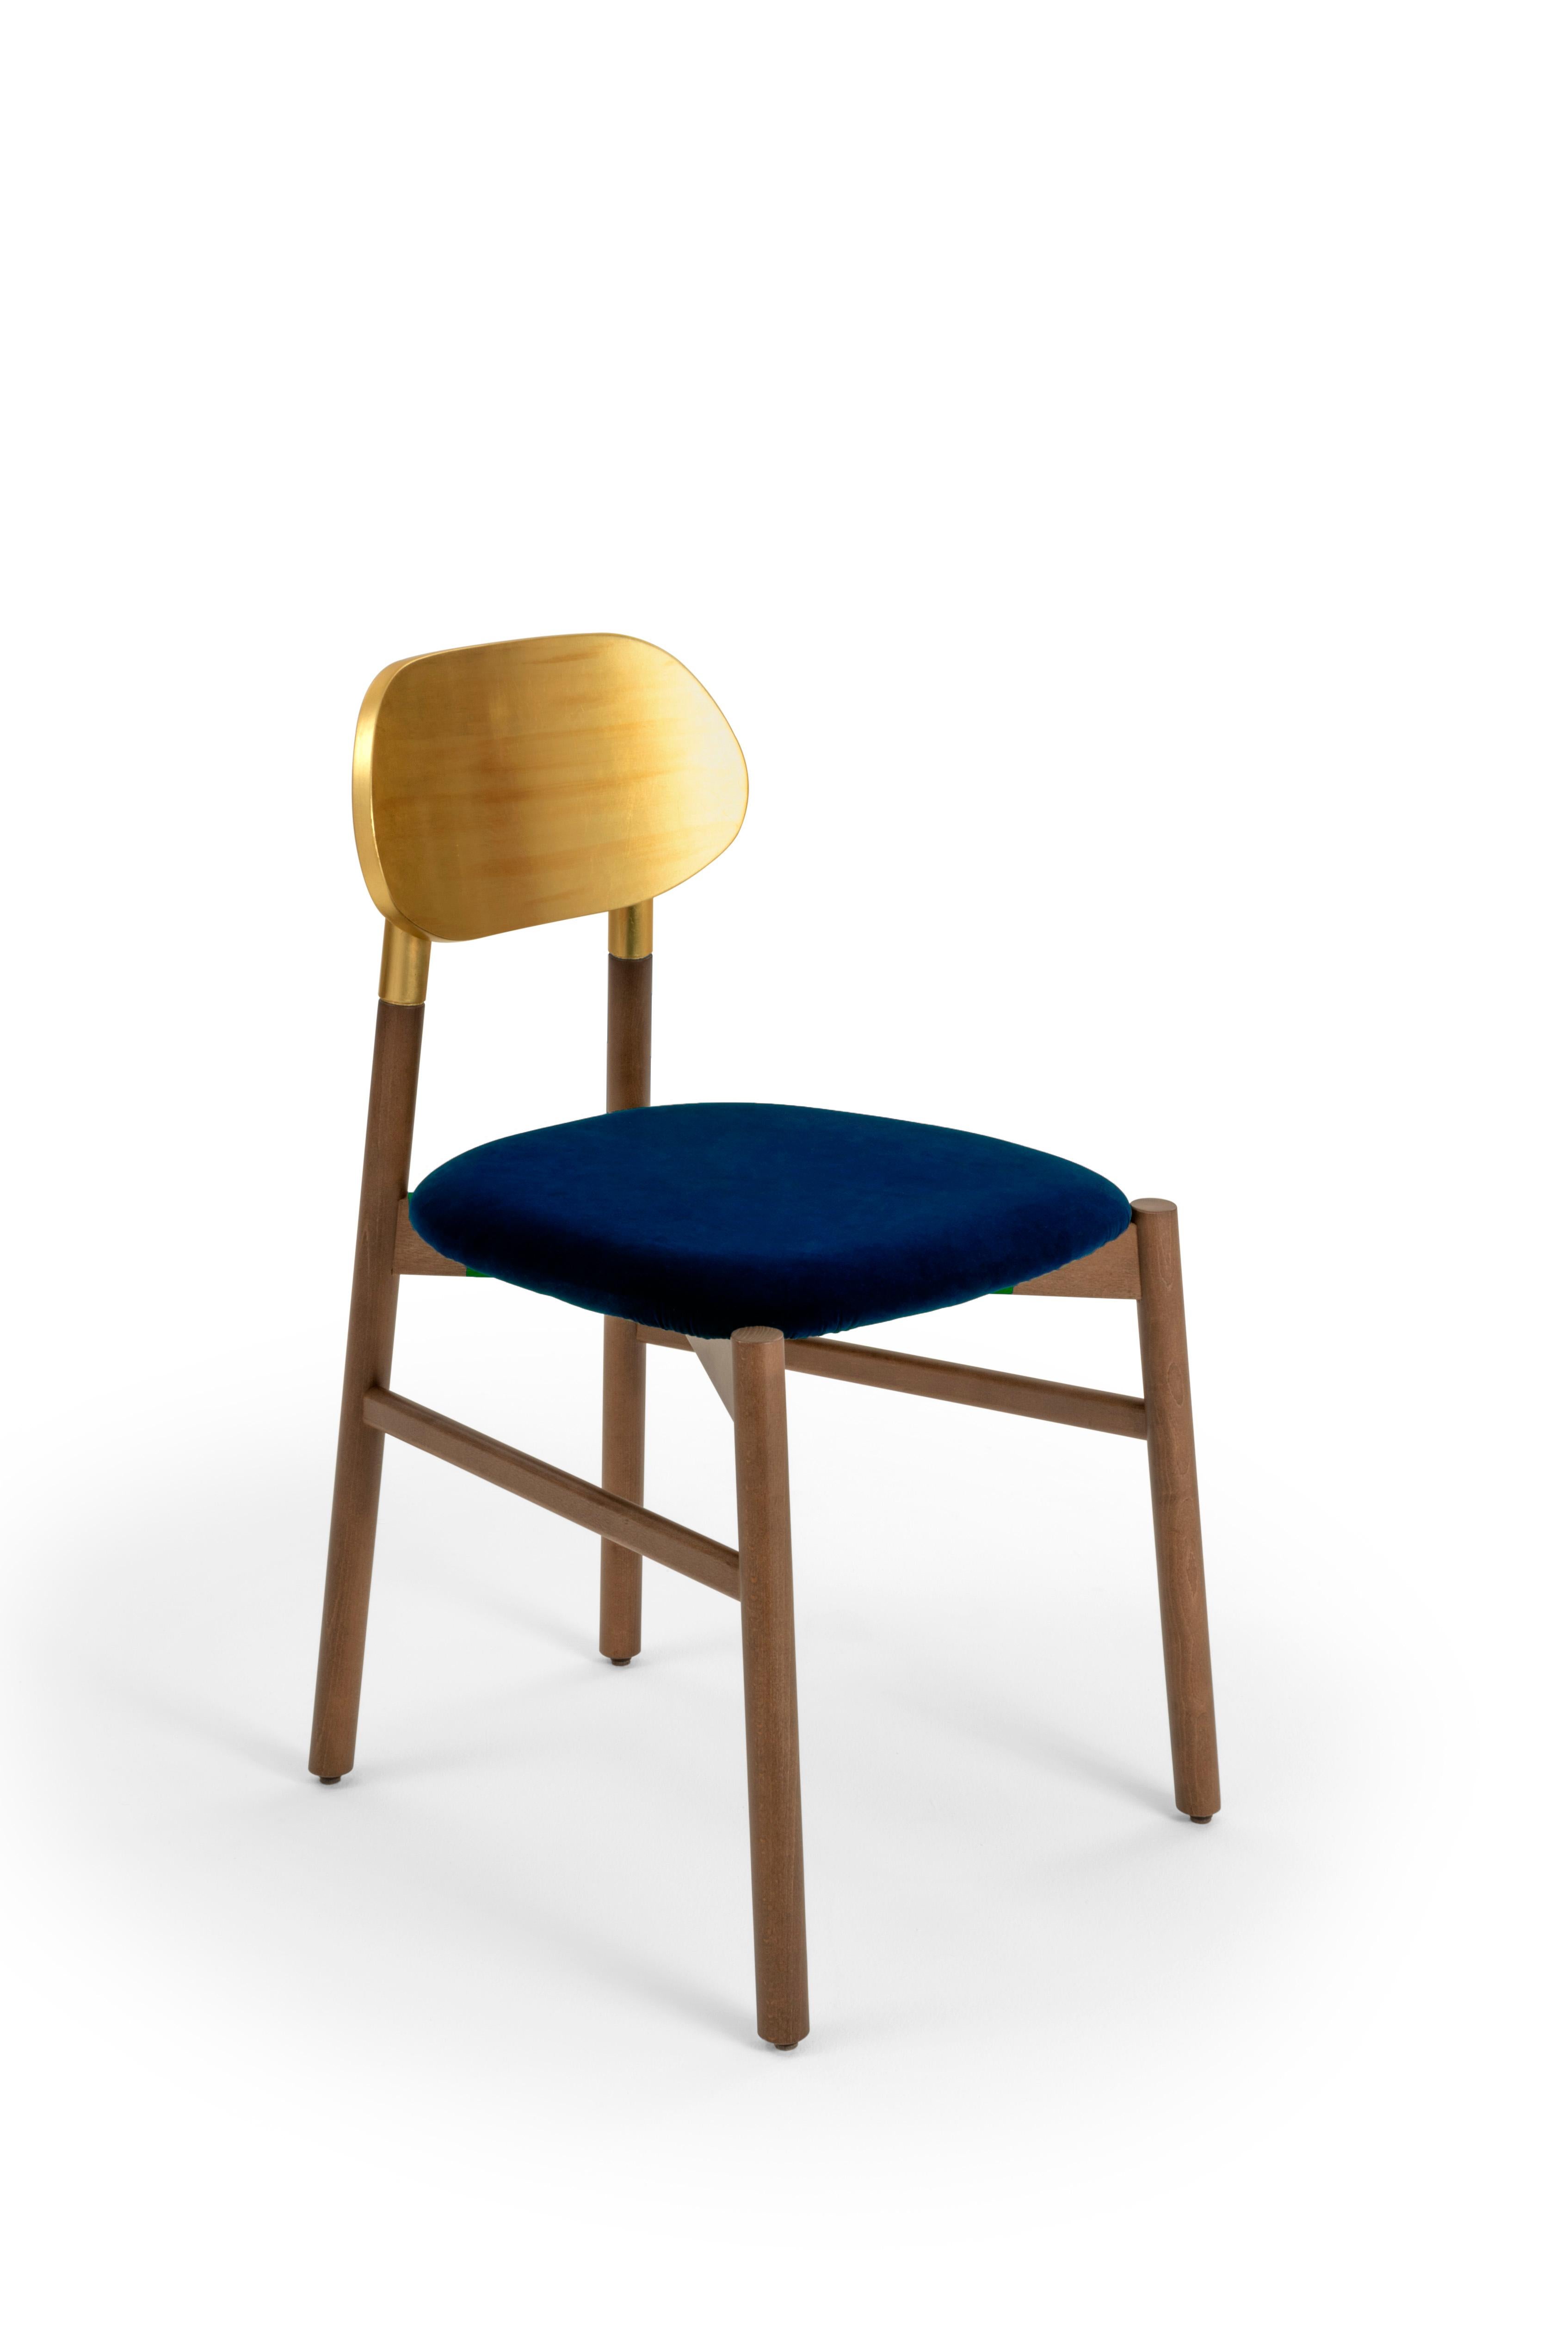 Gepolsterter Stuhl Bokken aus nussbaumfarben gebeiztem Buchenholz, Rückenlehne mit Blattgold und gepolstertem Sitz, bezogen mit hochwertigem Rubelli-Samt. Reine italienische Qualität.
Ein unverzichtbarer Stuhl in der Form, aber kostbar in den